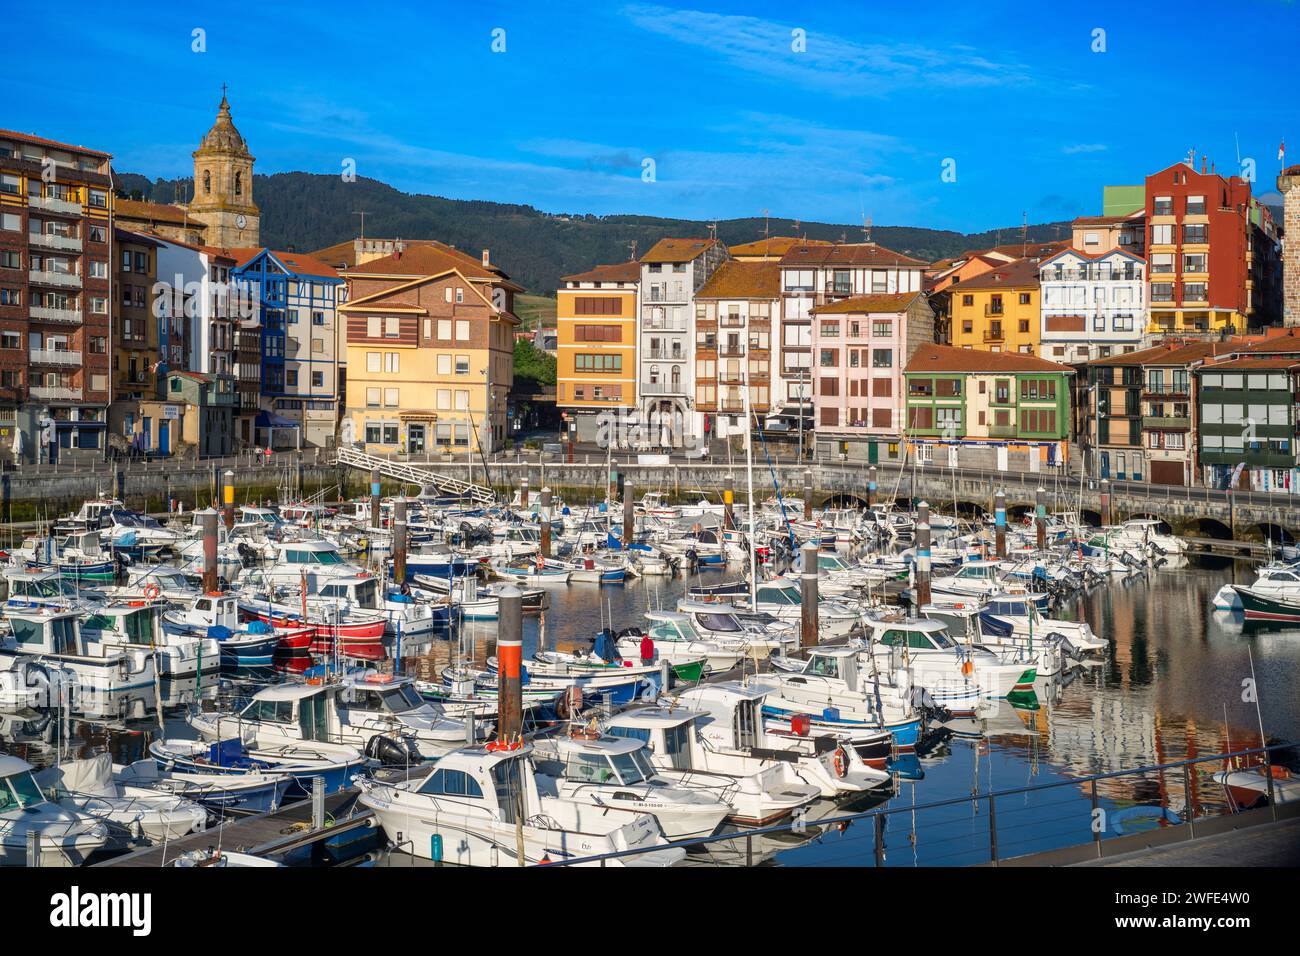 Centro storico e porto di pesca di Bermeo, nella provincia di Biscaglia, Paesi Baschi, Spagna settentrionale. Bermeo è un comune situato sulla costa di Bizkaia, in Bus Foto Stock